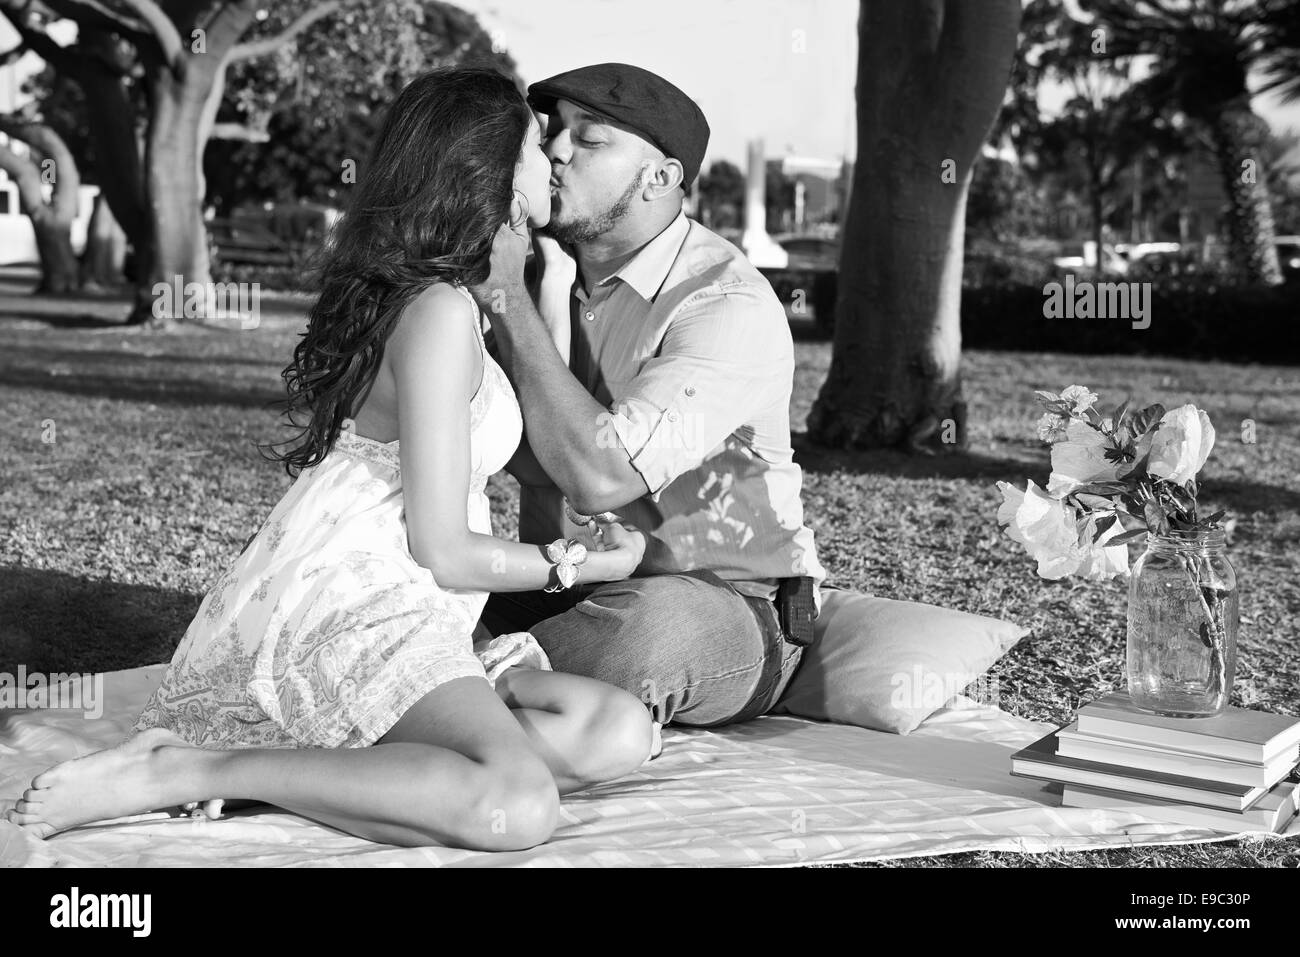 Giovane baciare in park durante un picnic in bianco e nero Foto Stock